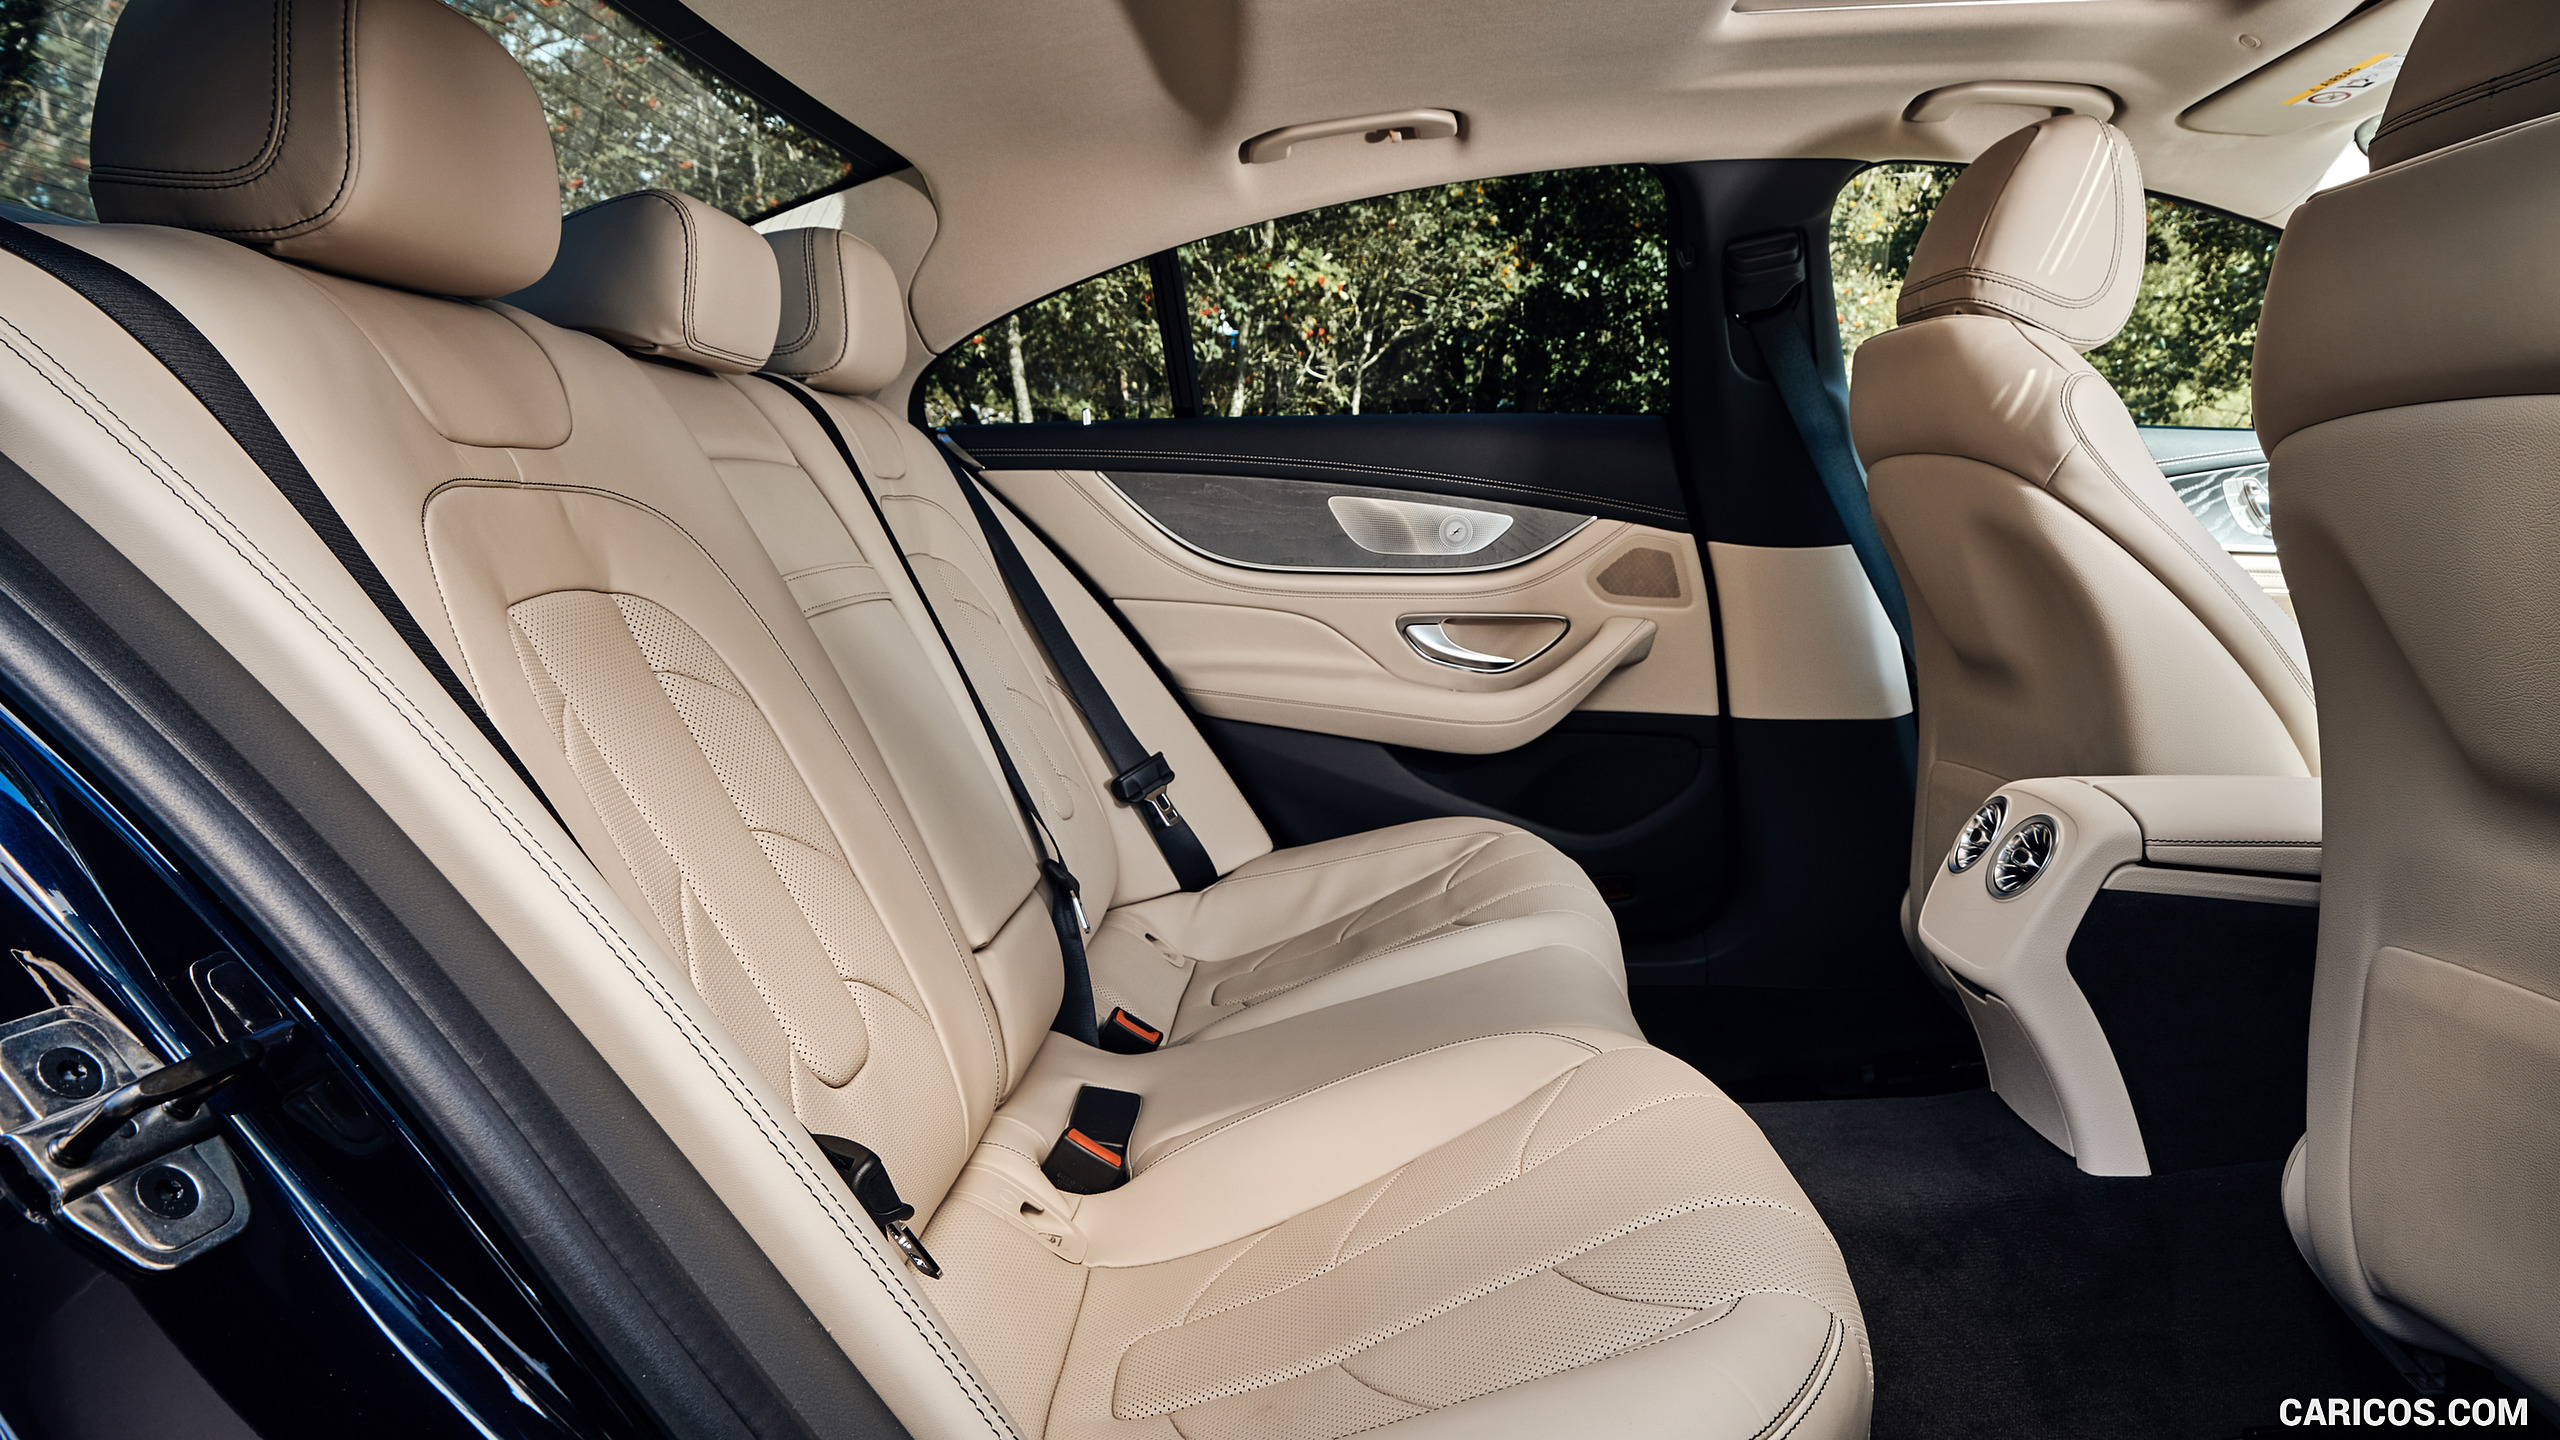 2019 Mercedes-AMG CLS 53 (UK-Spec) - Interior, Rear Seats, #97 of 98